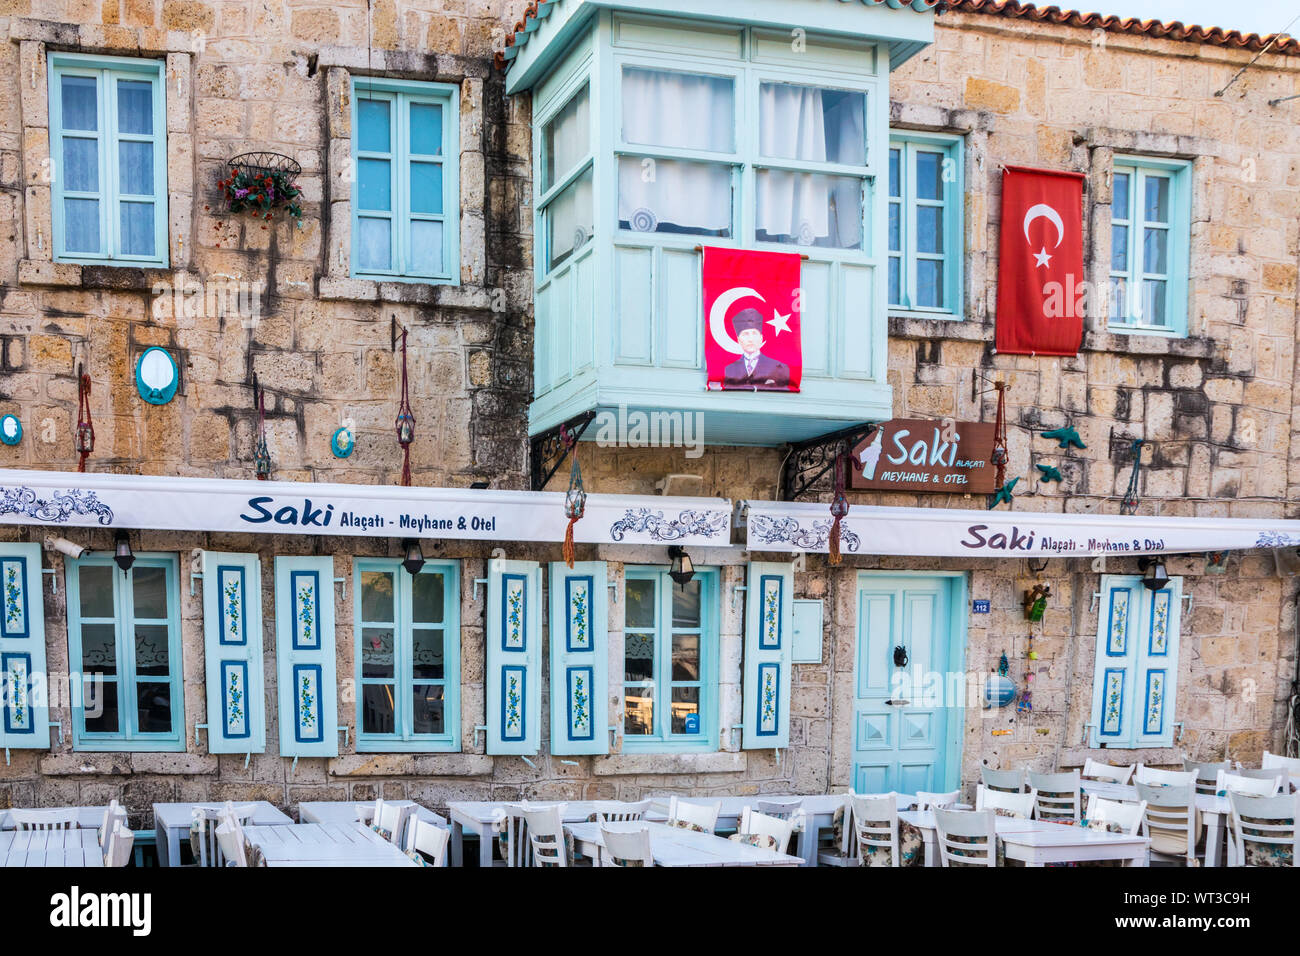 Alacati, Türkei - 3. September 2019: Saki Restaurant und Hotel. Die Stadt ist ein beliebtes Ziel für Touristen. Stockfoto